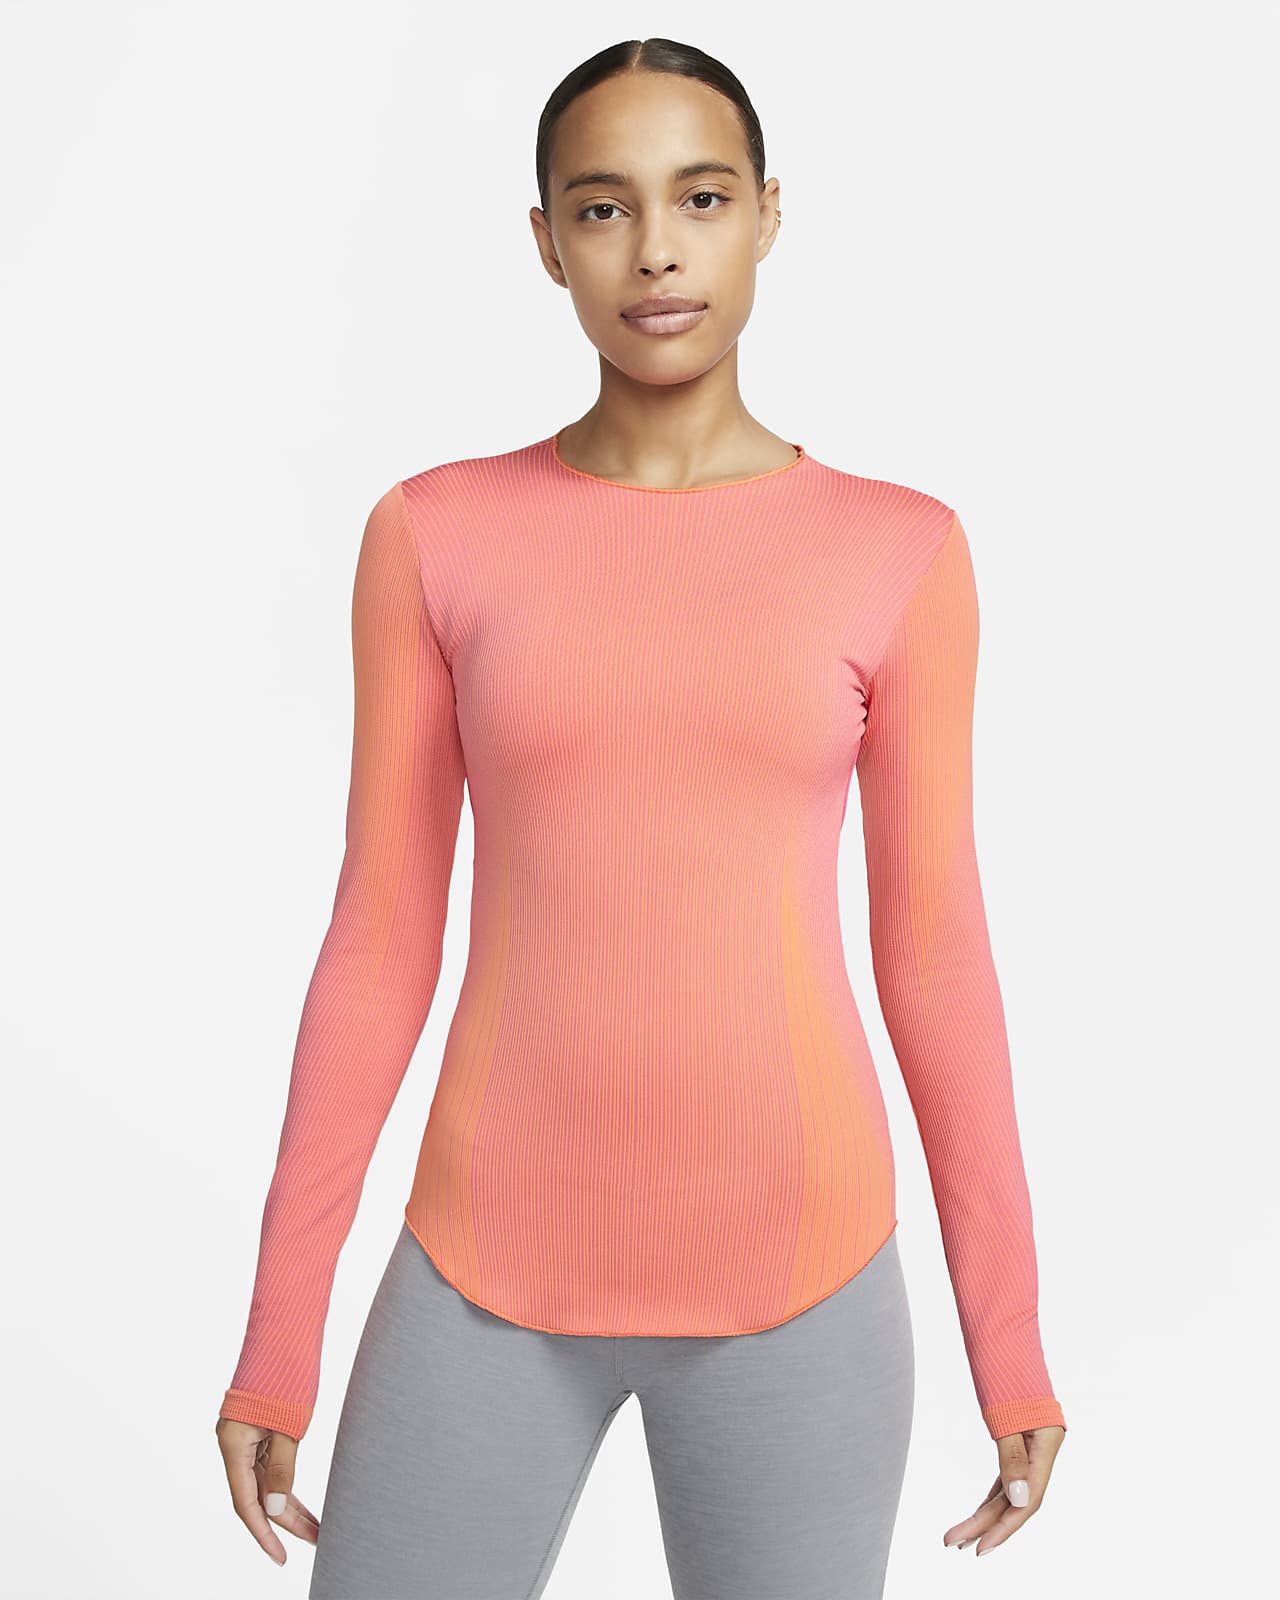 construcción naval juego incidente Nike Yoga Dri-FIT ADV Camiseta de manga larga - Mujer. Nike ES